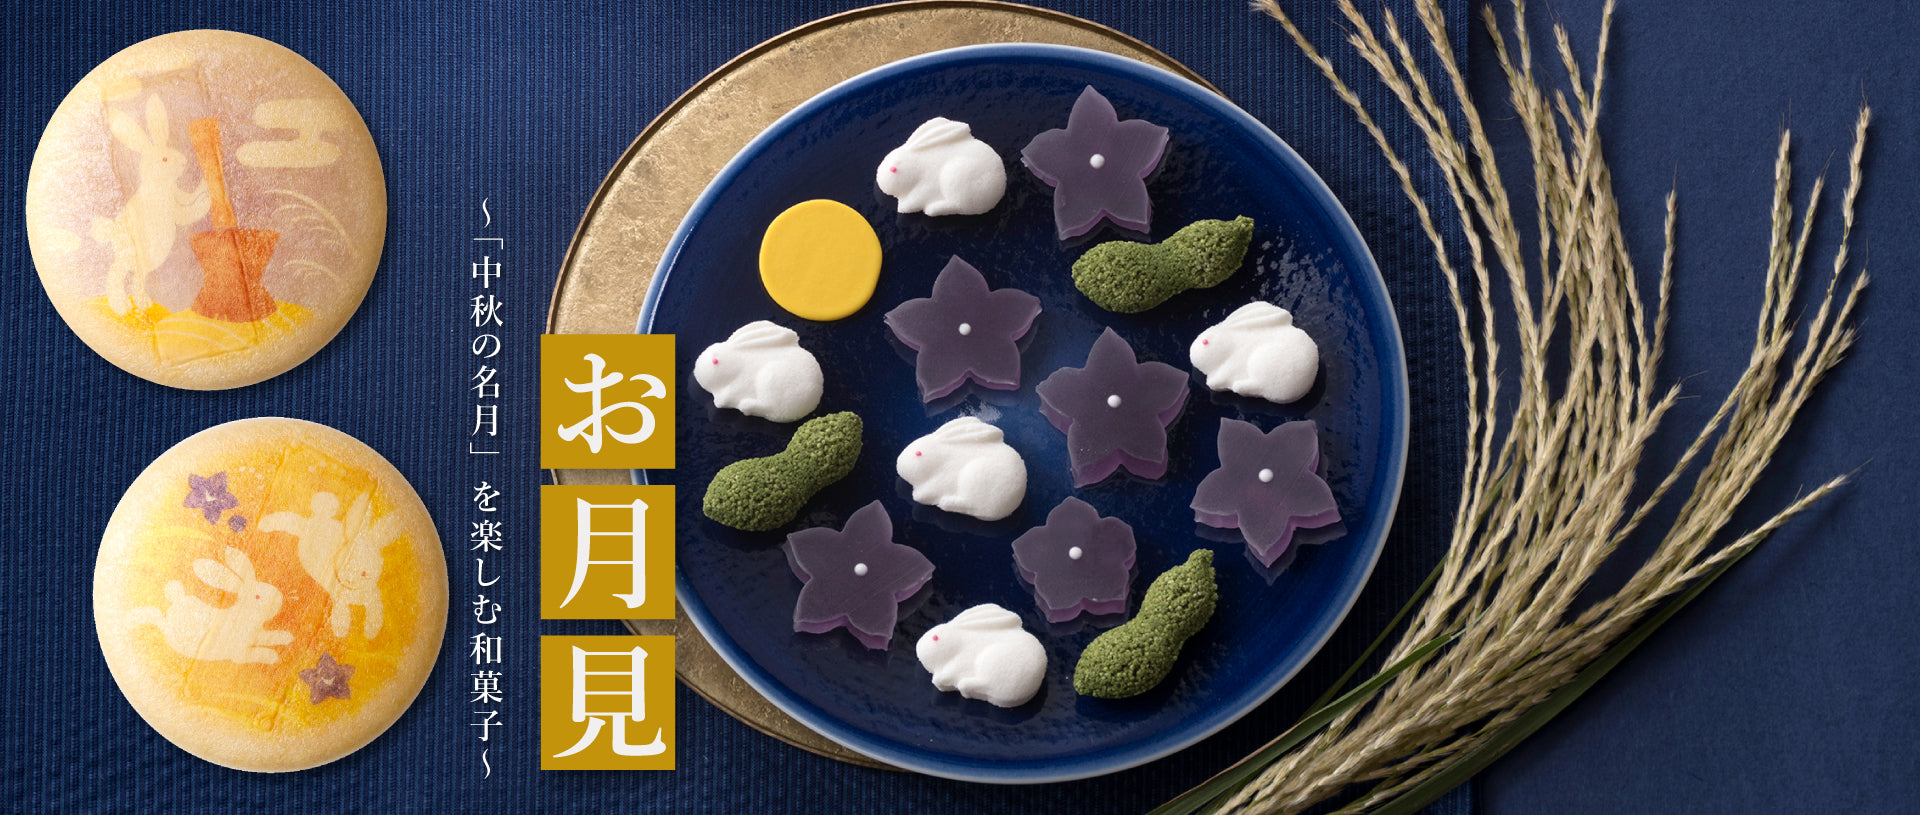 お月見「中秋の名月」を楽しむ和菓子